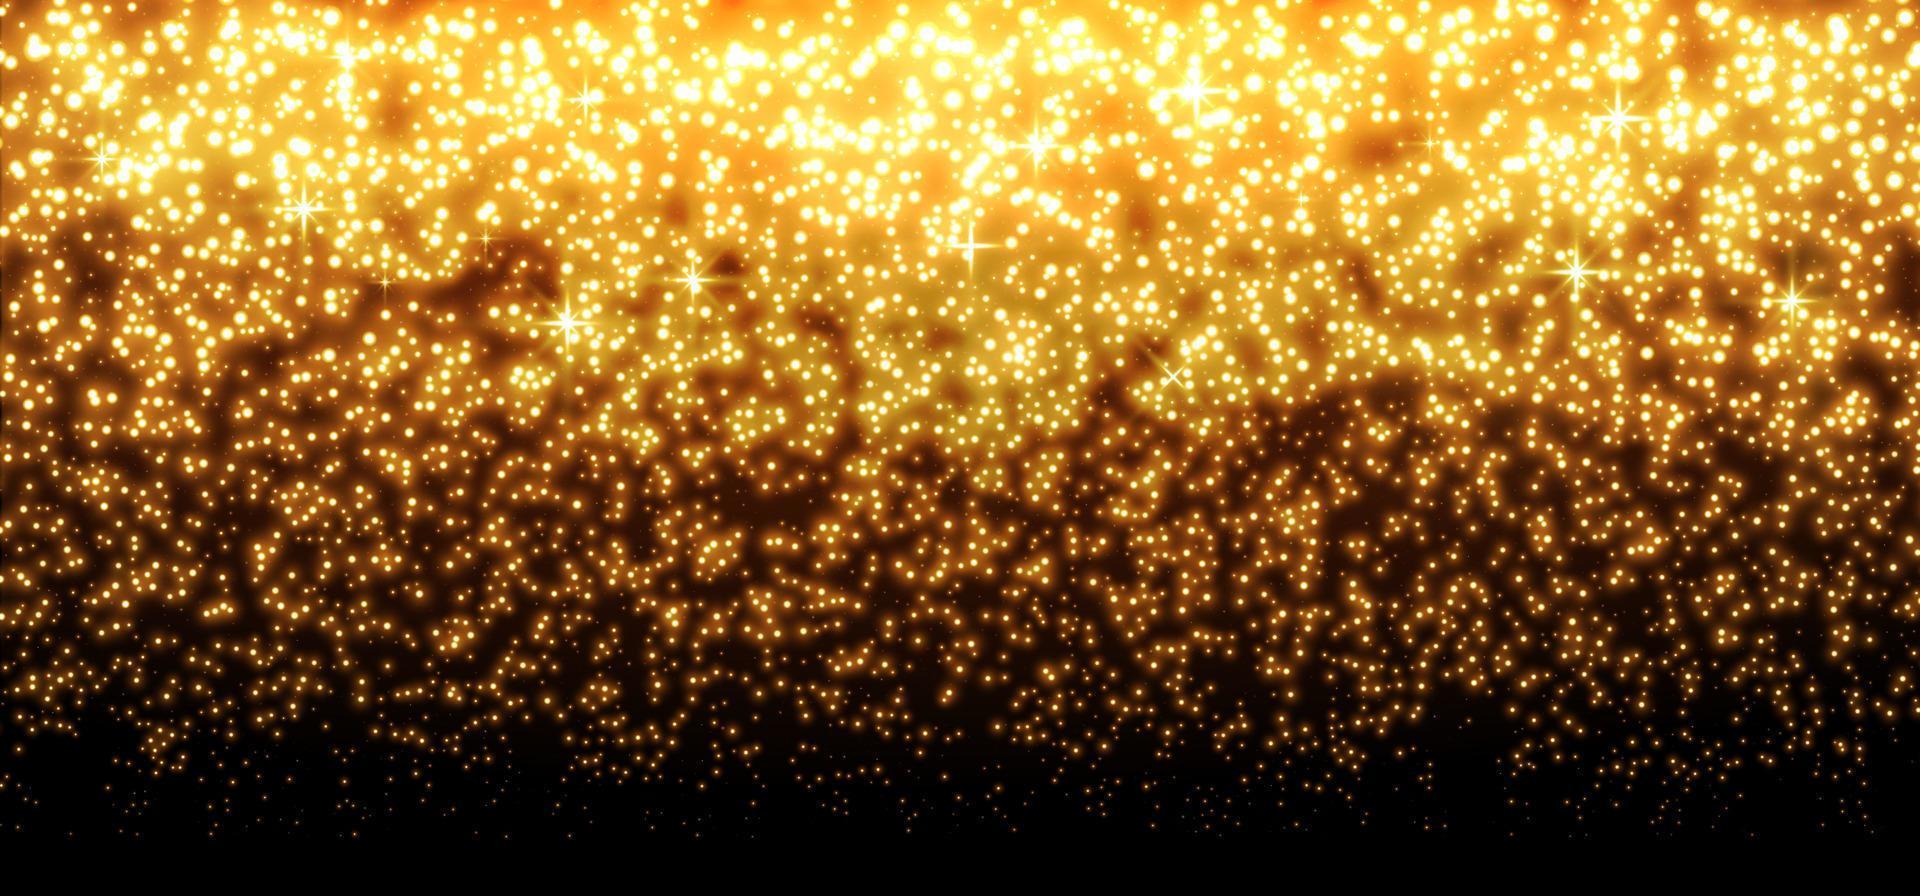 guld glittrande prickar, gnistrar, partiklar och stjärnor på en svart bakgrund. abstrakt ljuseffekt. guld lysande punkter. vektor illustration.